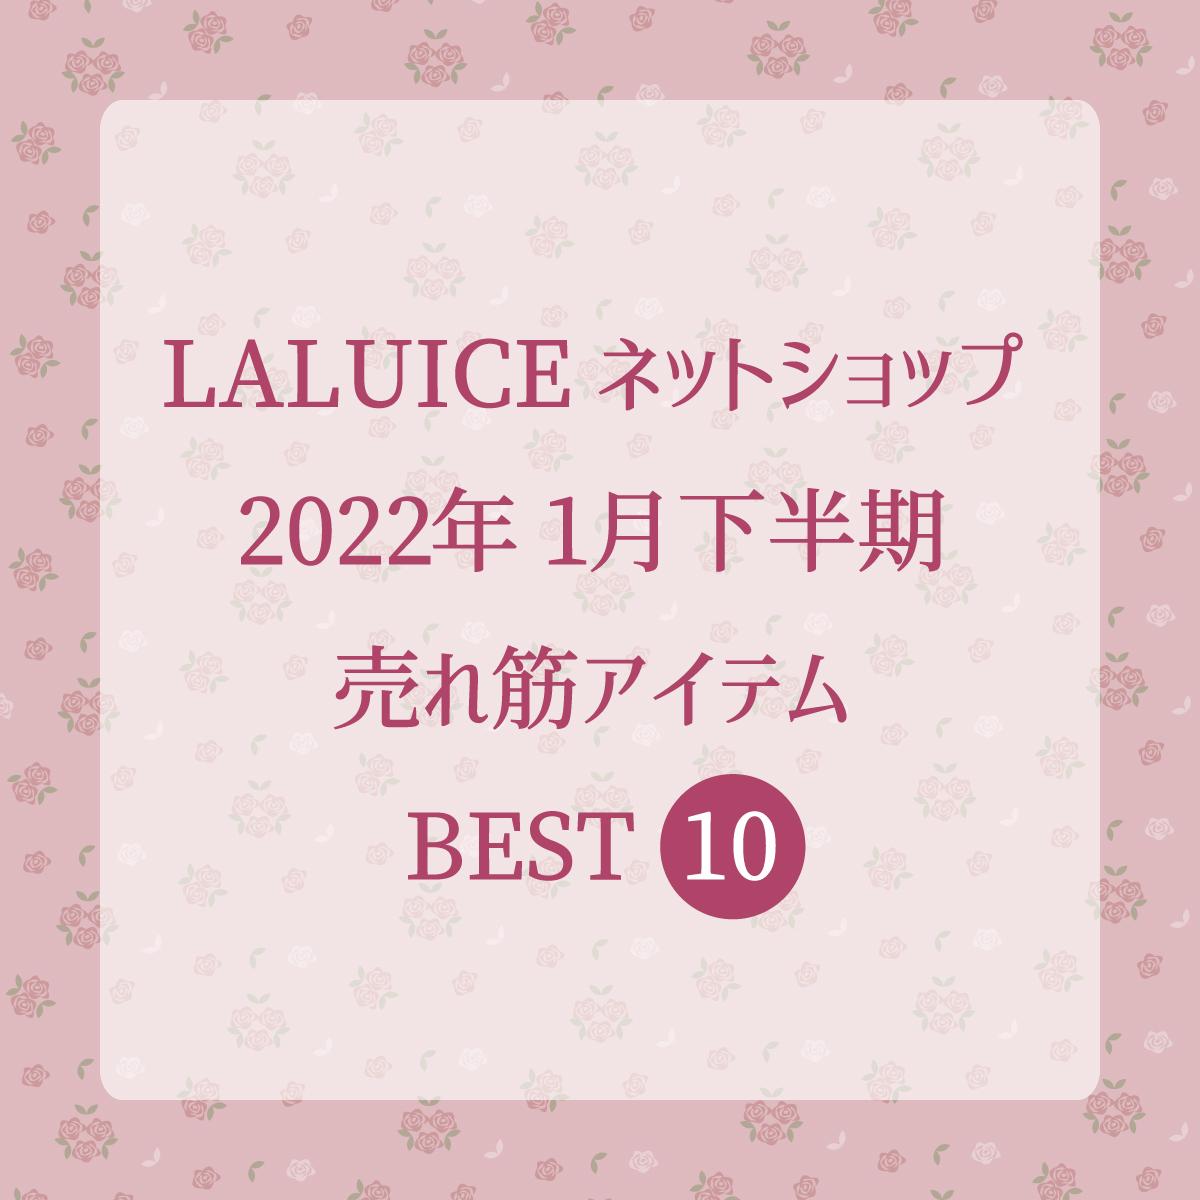 2022年1月下半期(1/16～1/31) LALUICEネットショップ売れ筋アイテム BEST10